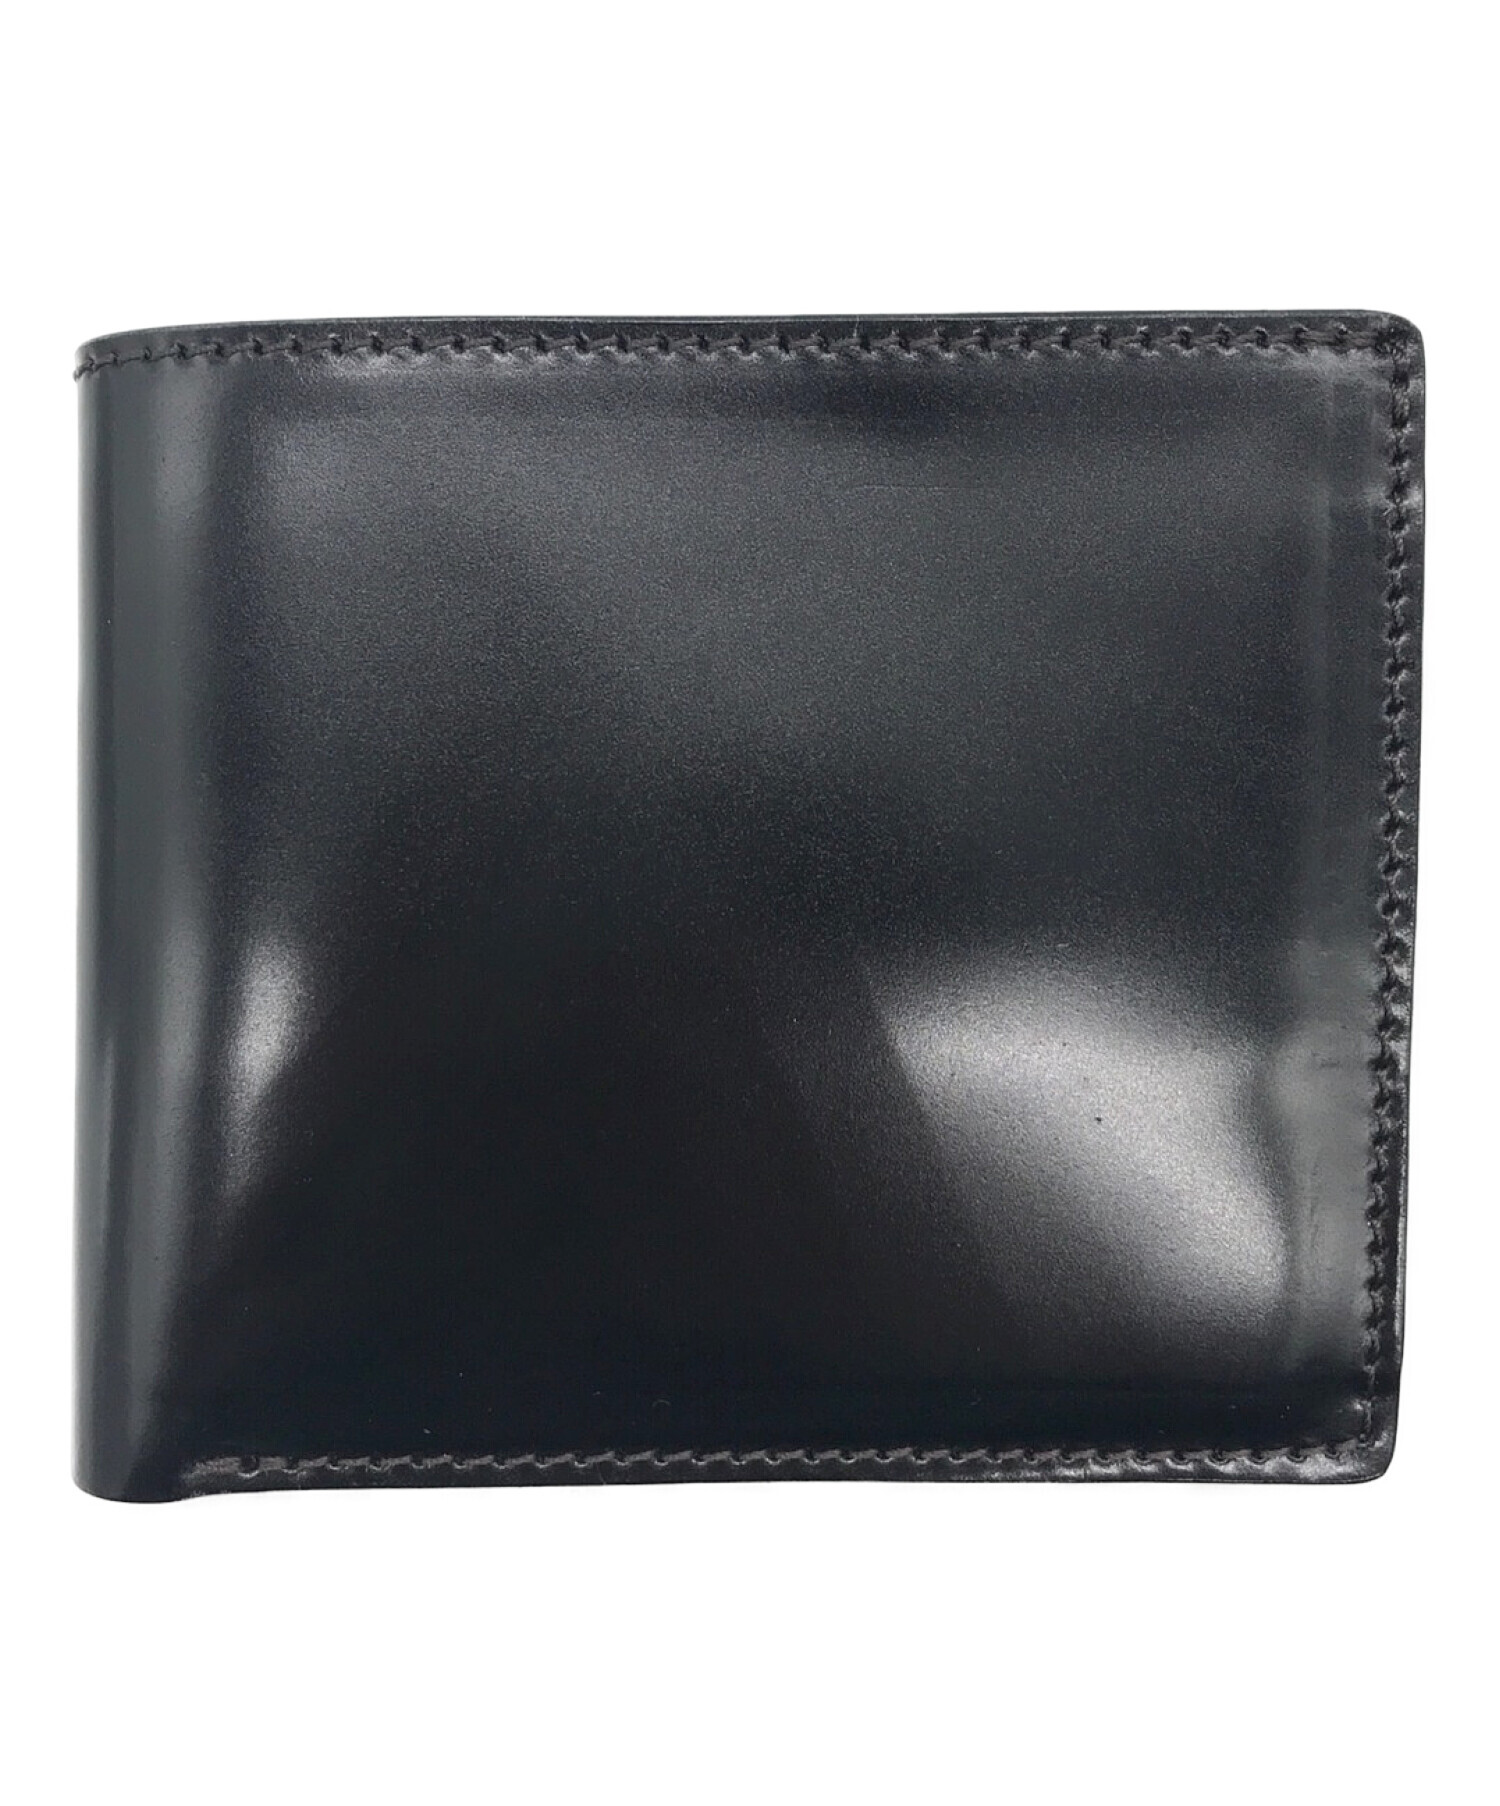 THE SUPERIOR LABOR (シュペリオールレイバー) 2つ折り財布 ブラック 未使用品